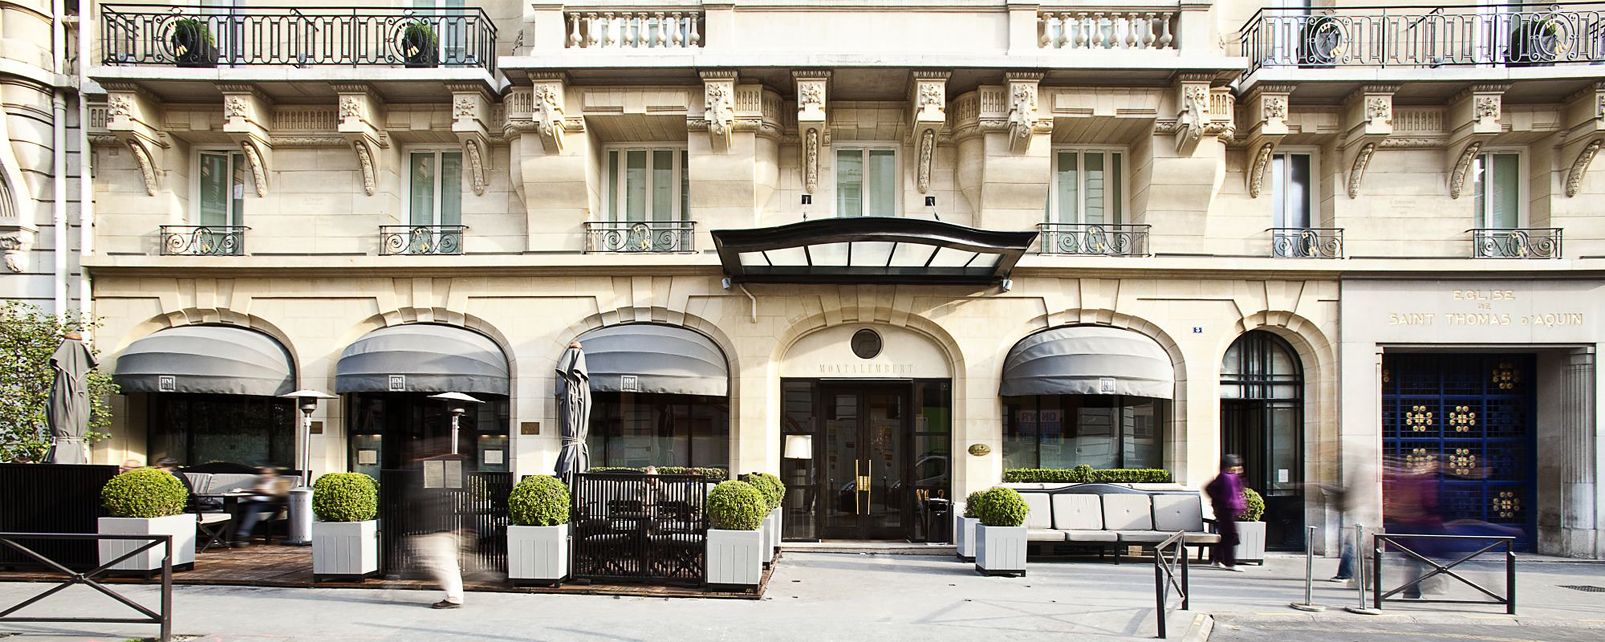 Hotel Montalembert in Paris